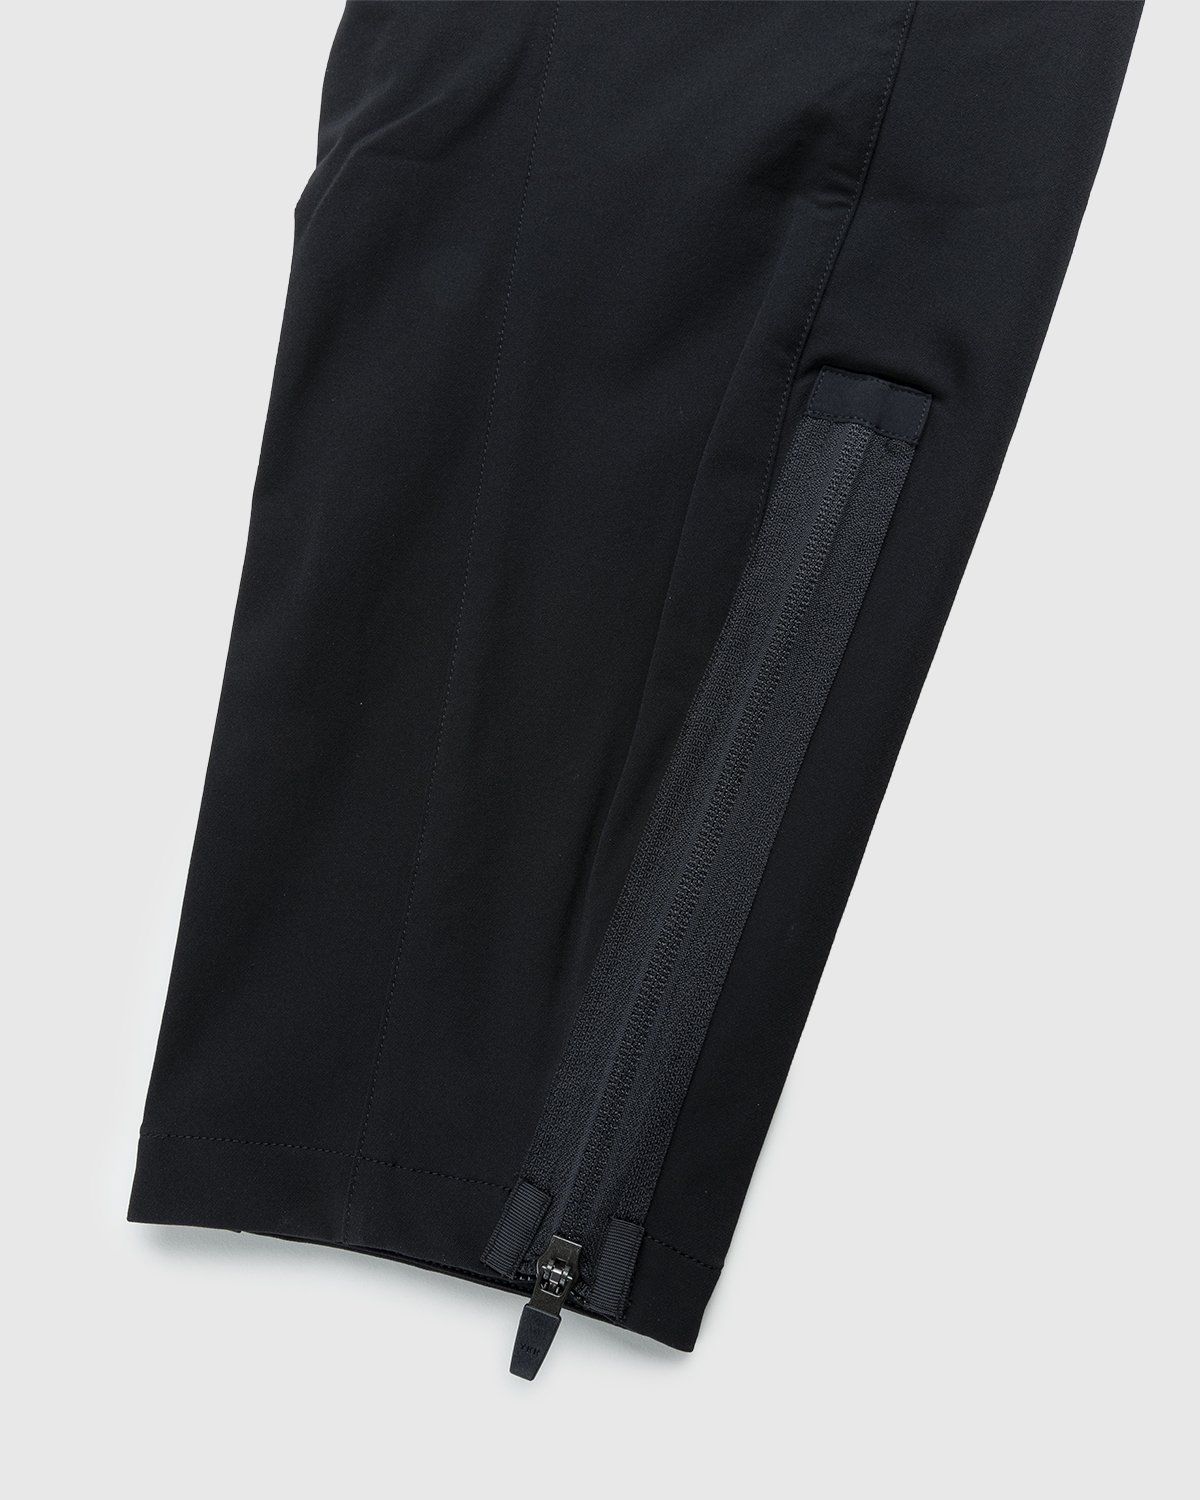 ACRONYM – P41-DS Pant Black - Pants - Black - Image 6